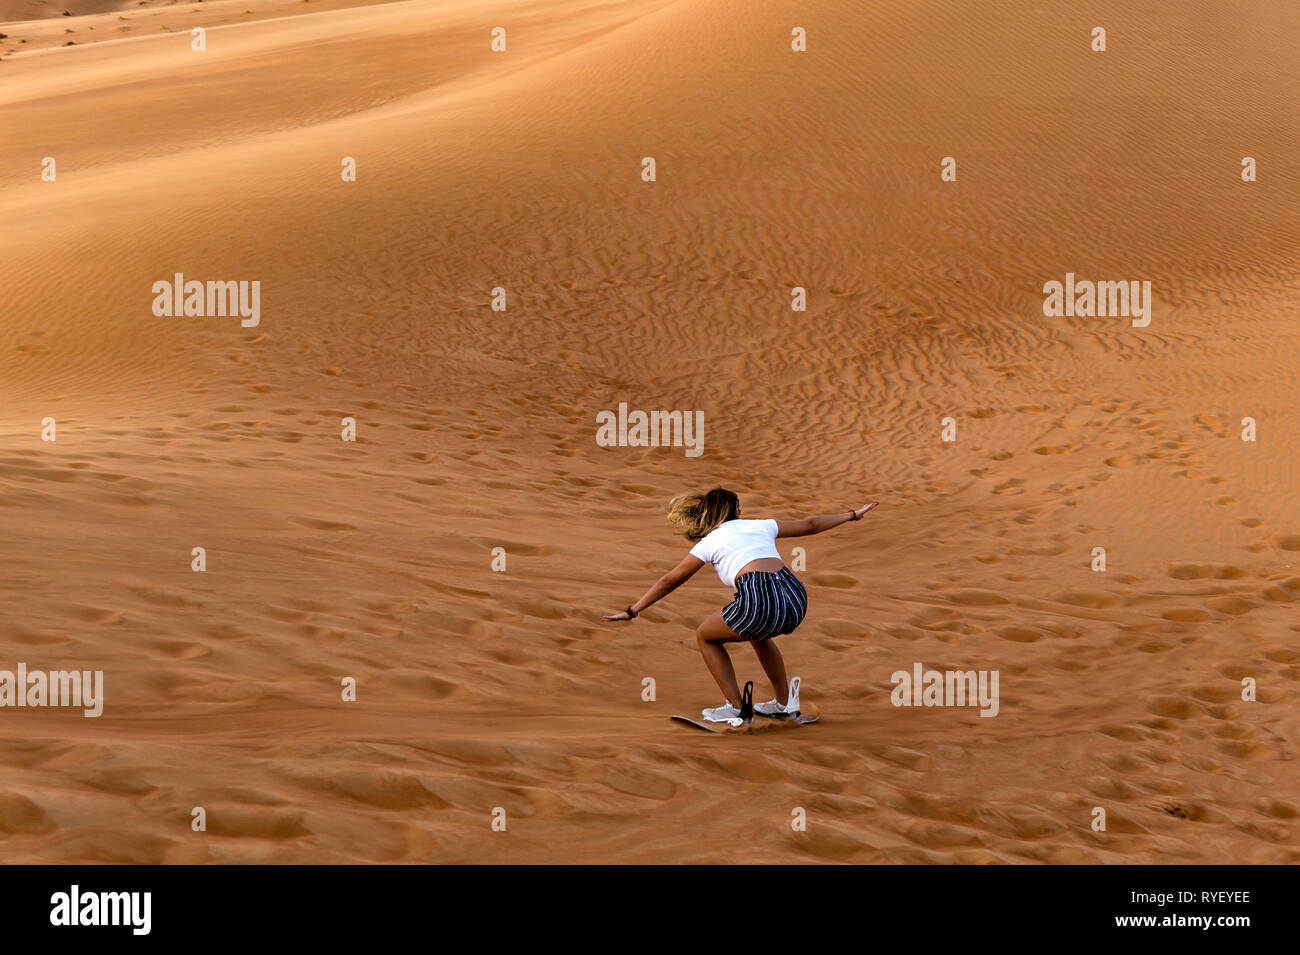 Junge Mädchen Sandboarding in der Wüste - extreme Wüste in Dubai Stockfoto